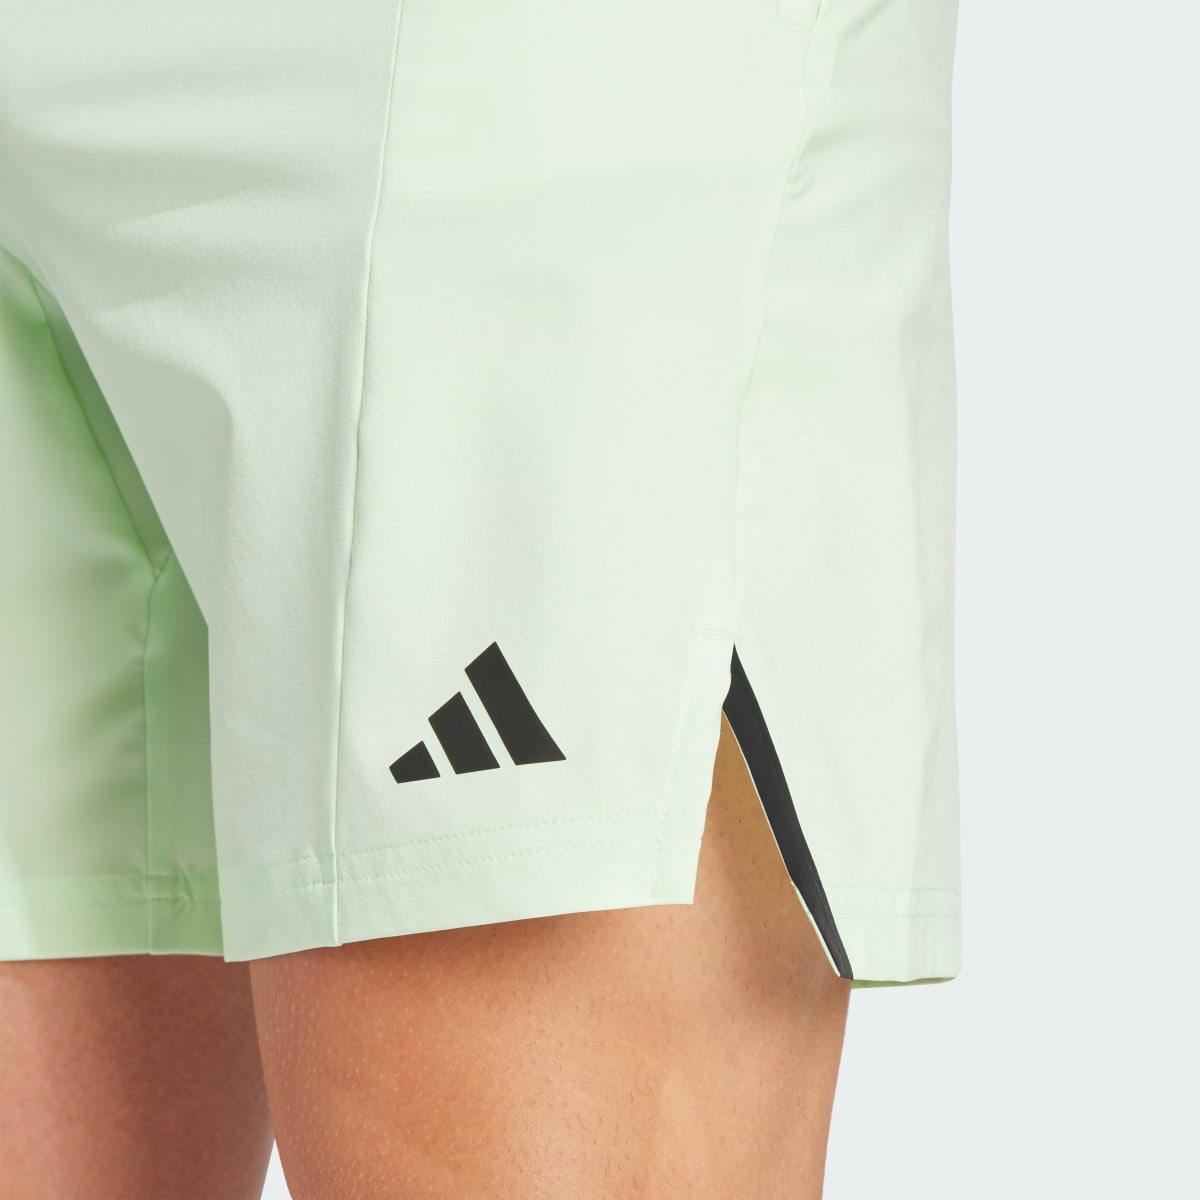 Adidas Designed for Training Workout Shorts. 5